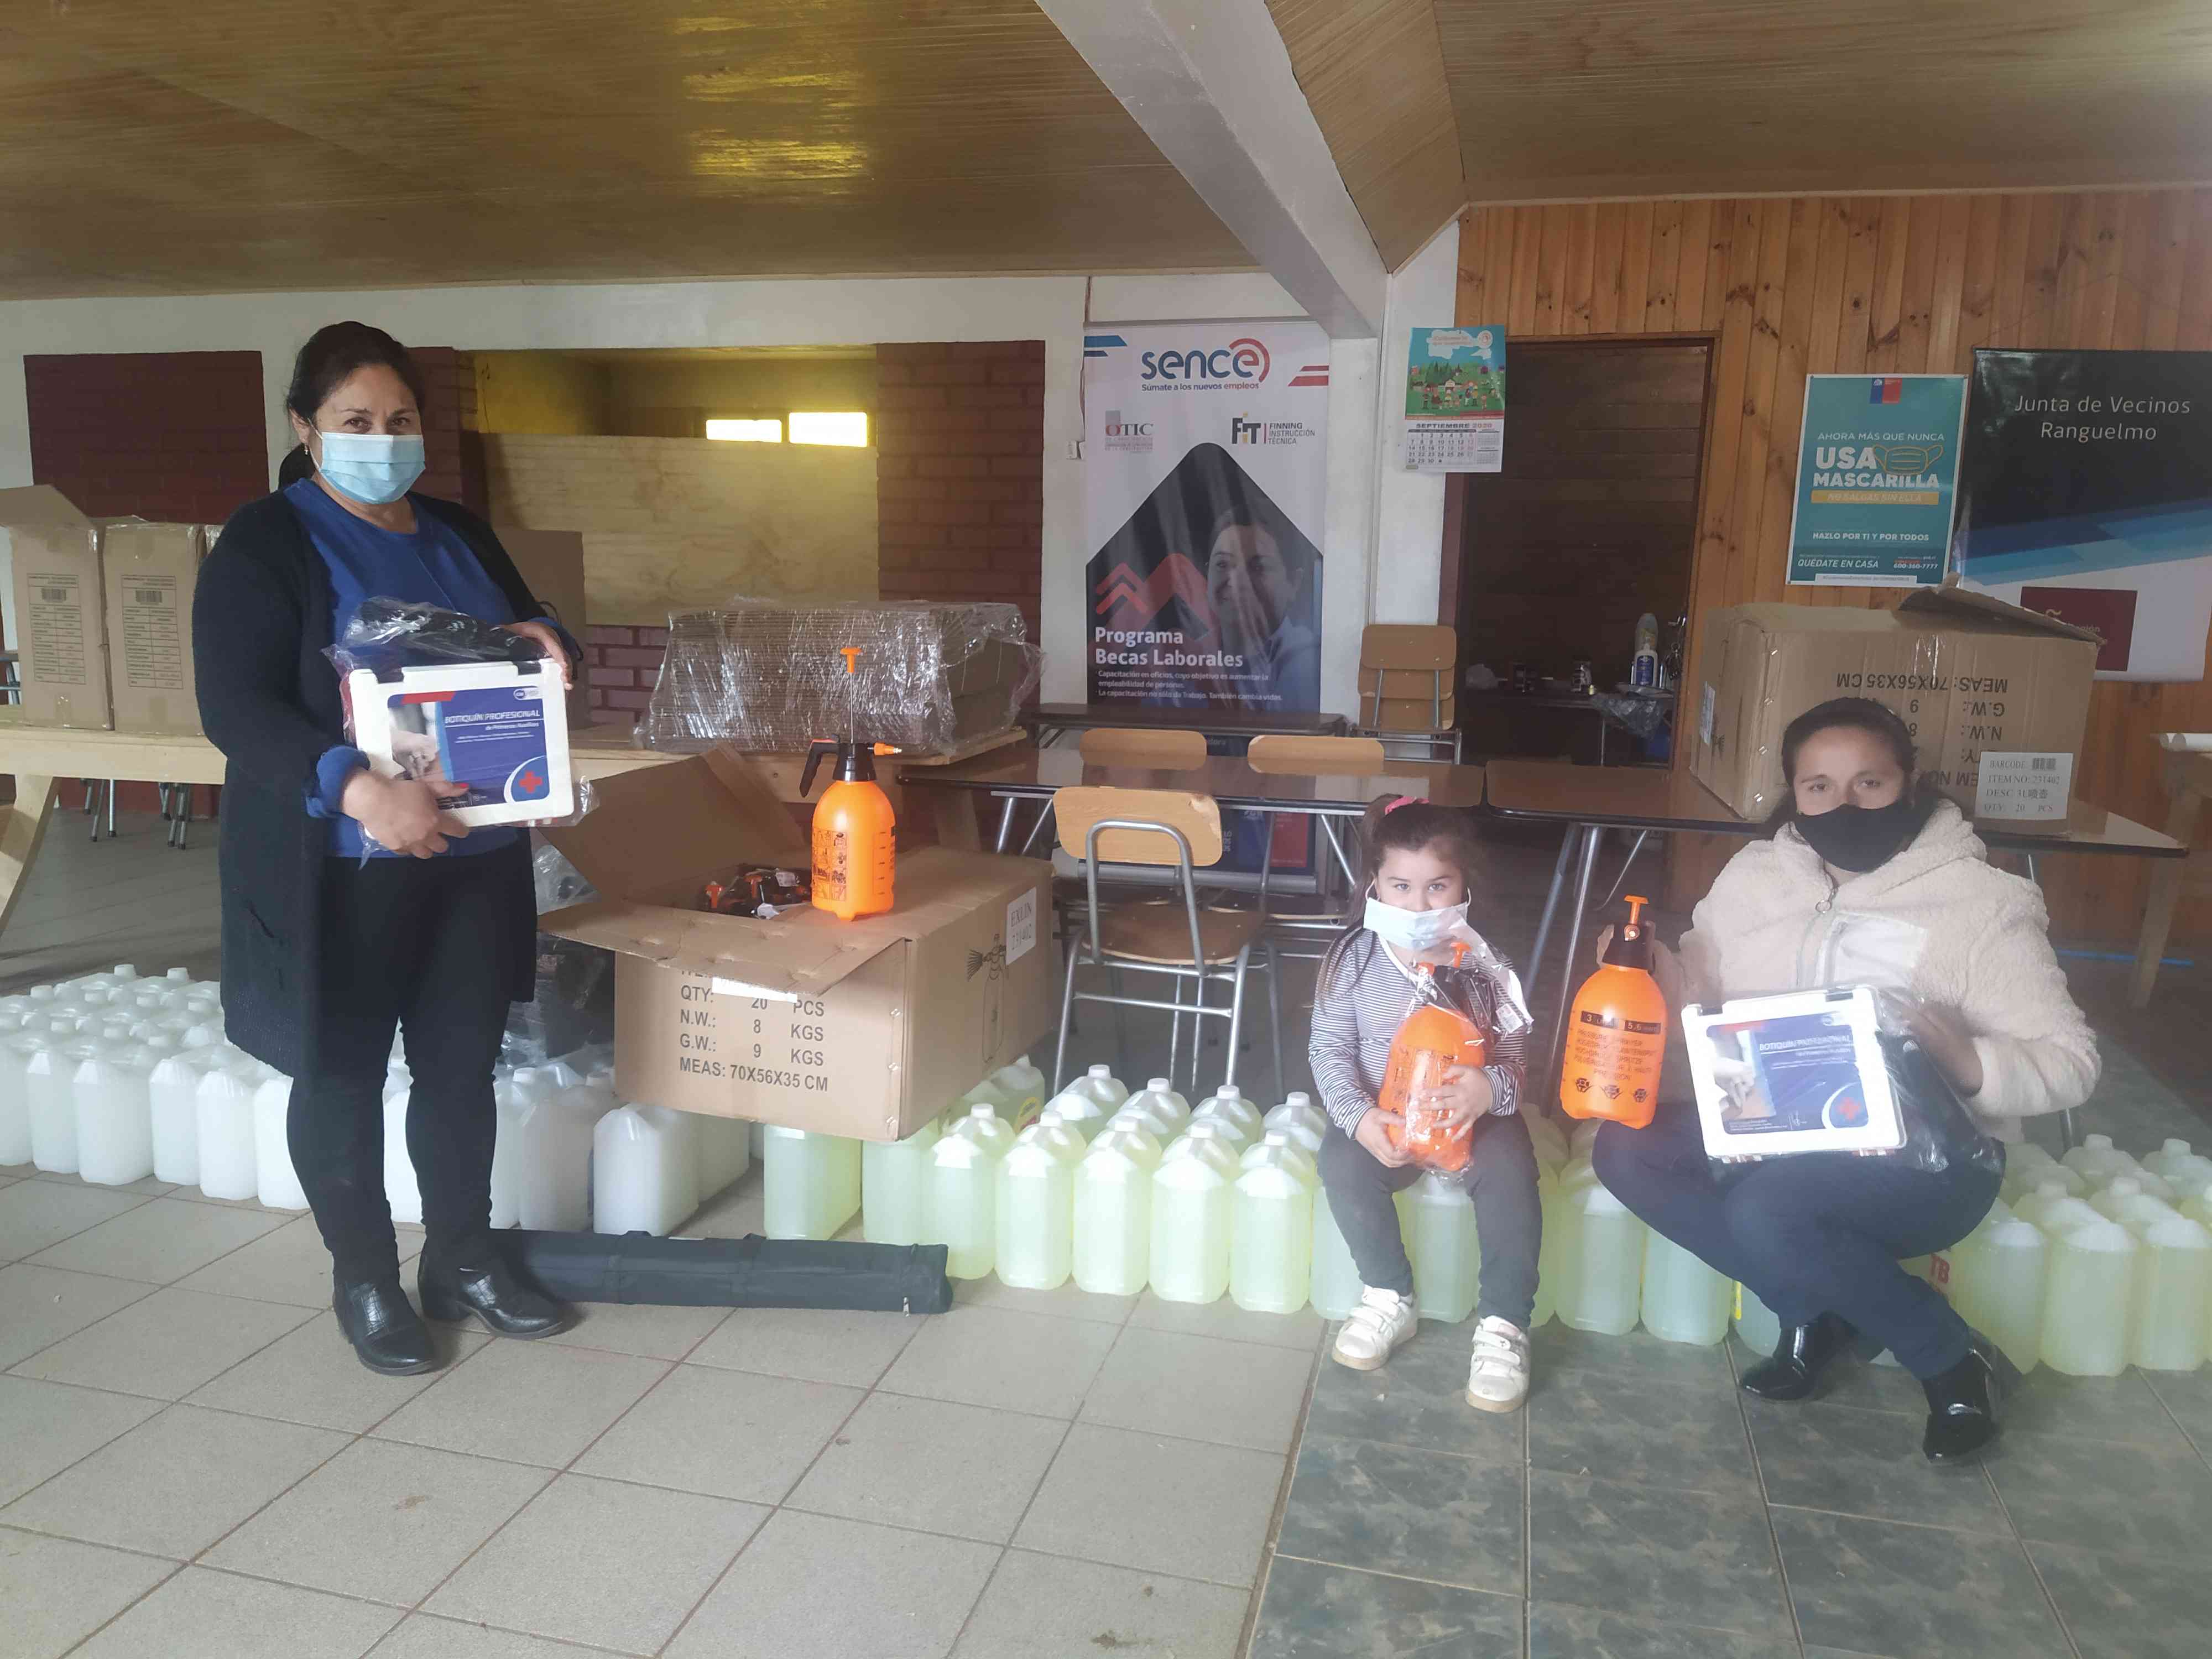 Entrega de kit de sanitización y botiquines de primeros auxilios a Junta de Vecinos de Ranguelmo de la comuna de Coelemu